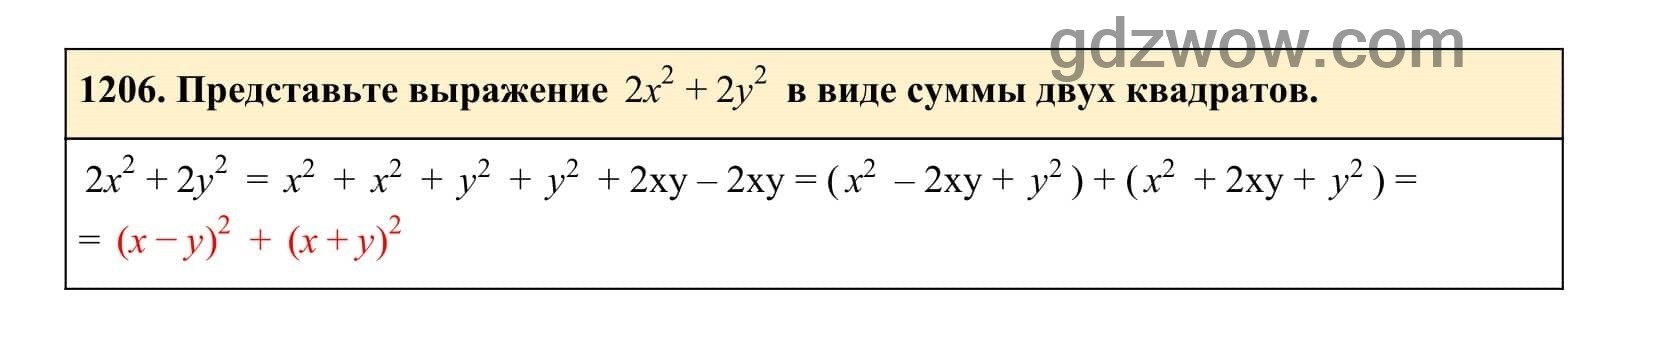 Упражнение 1206 - ГДЗ по Алгебре 7 класс Учебник Макарычев (решебник) - GDZwow